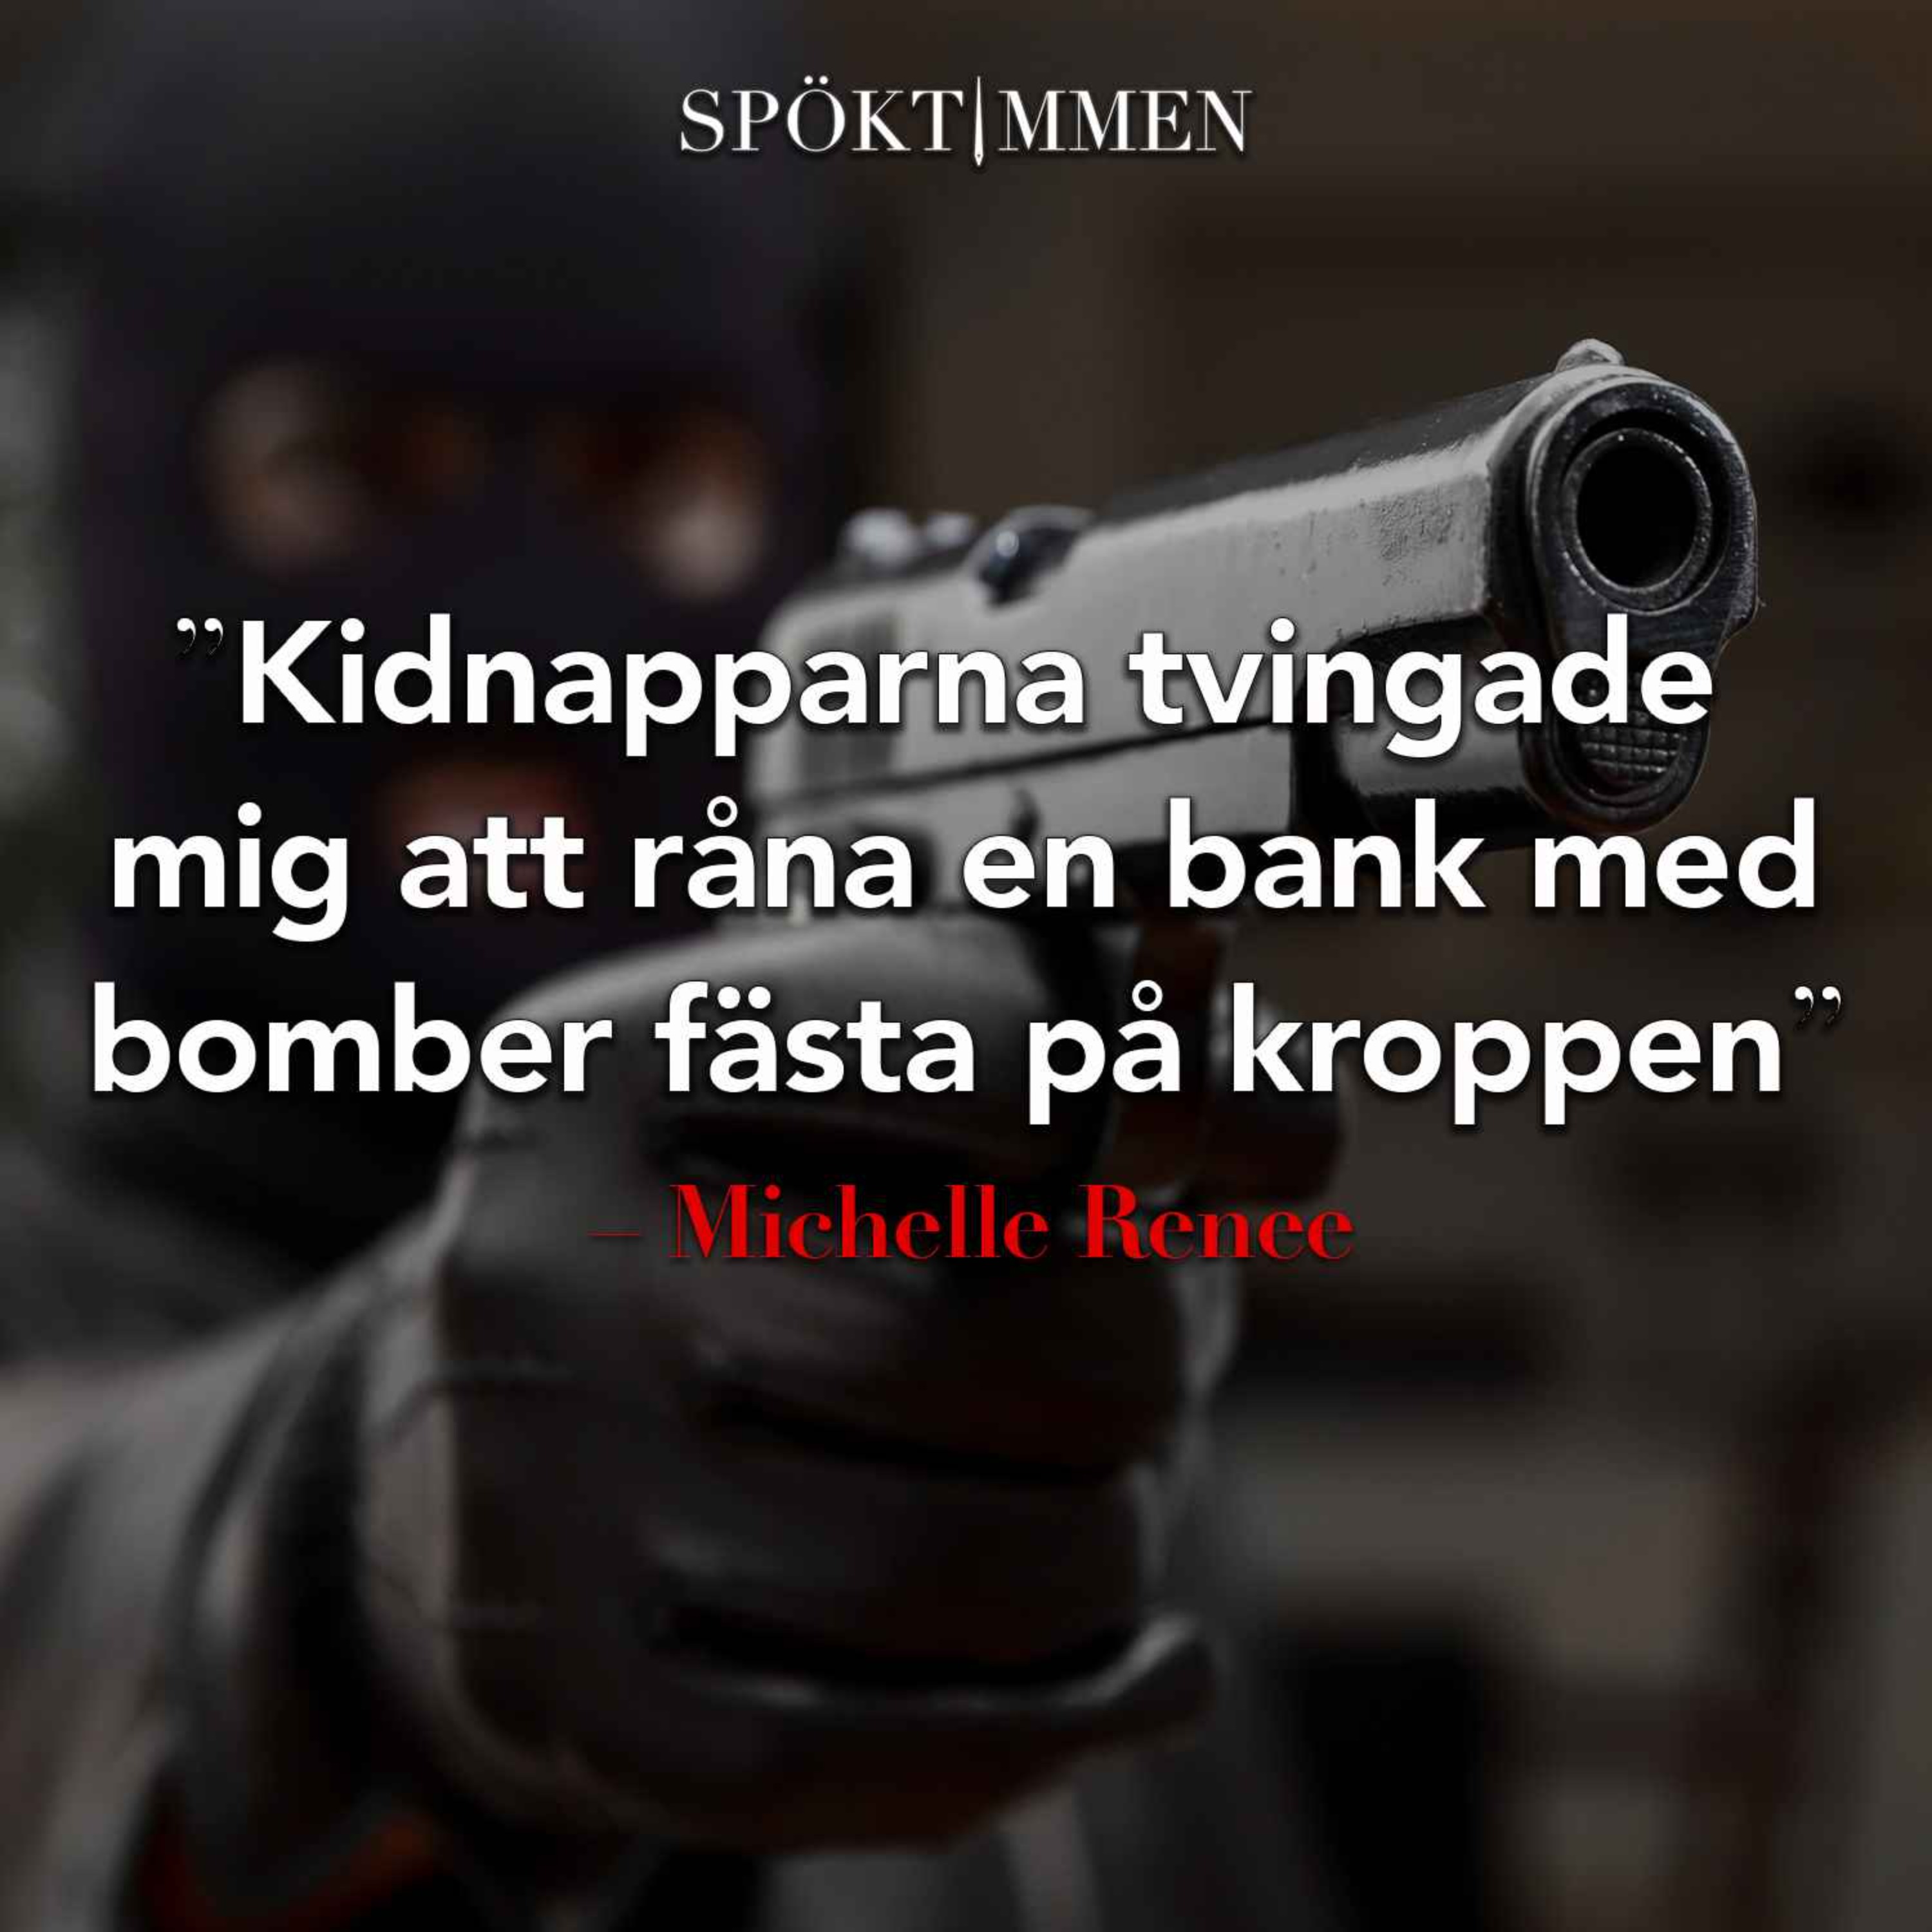 ”Kidnapparna tvingade mig att råna en bank, med bomber fästa på kroppen” – Michelle Renee